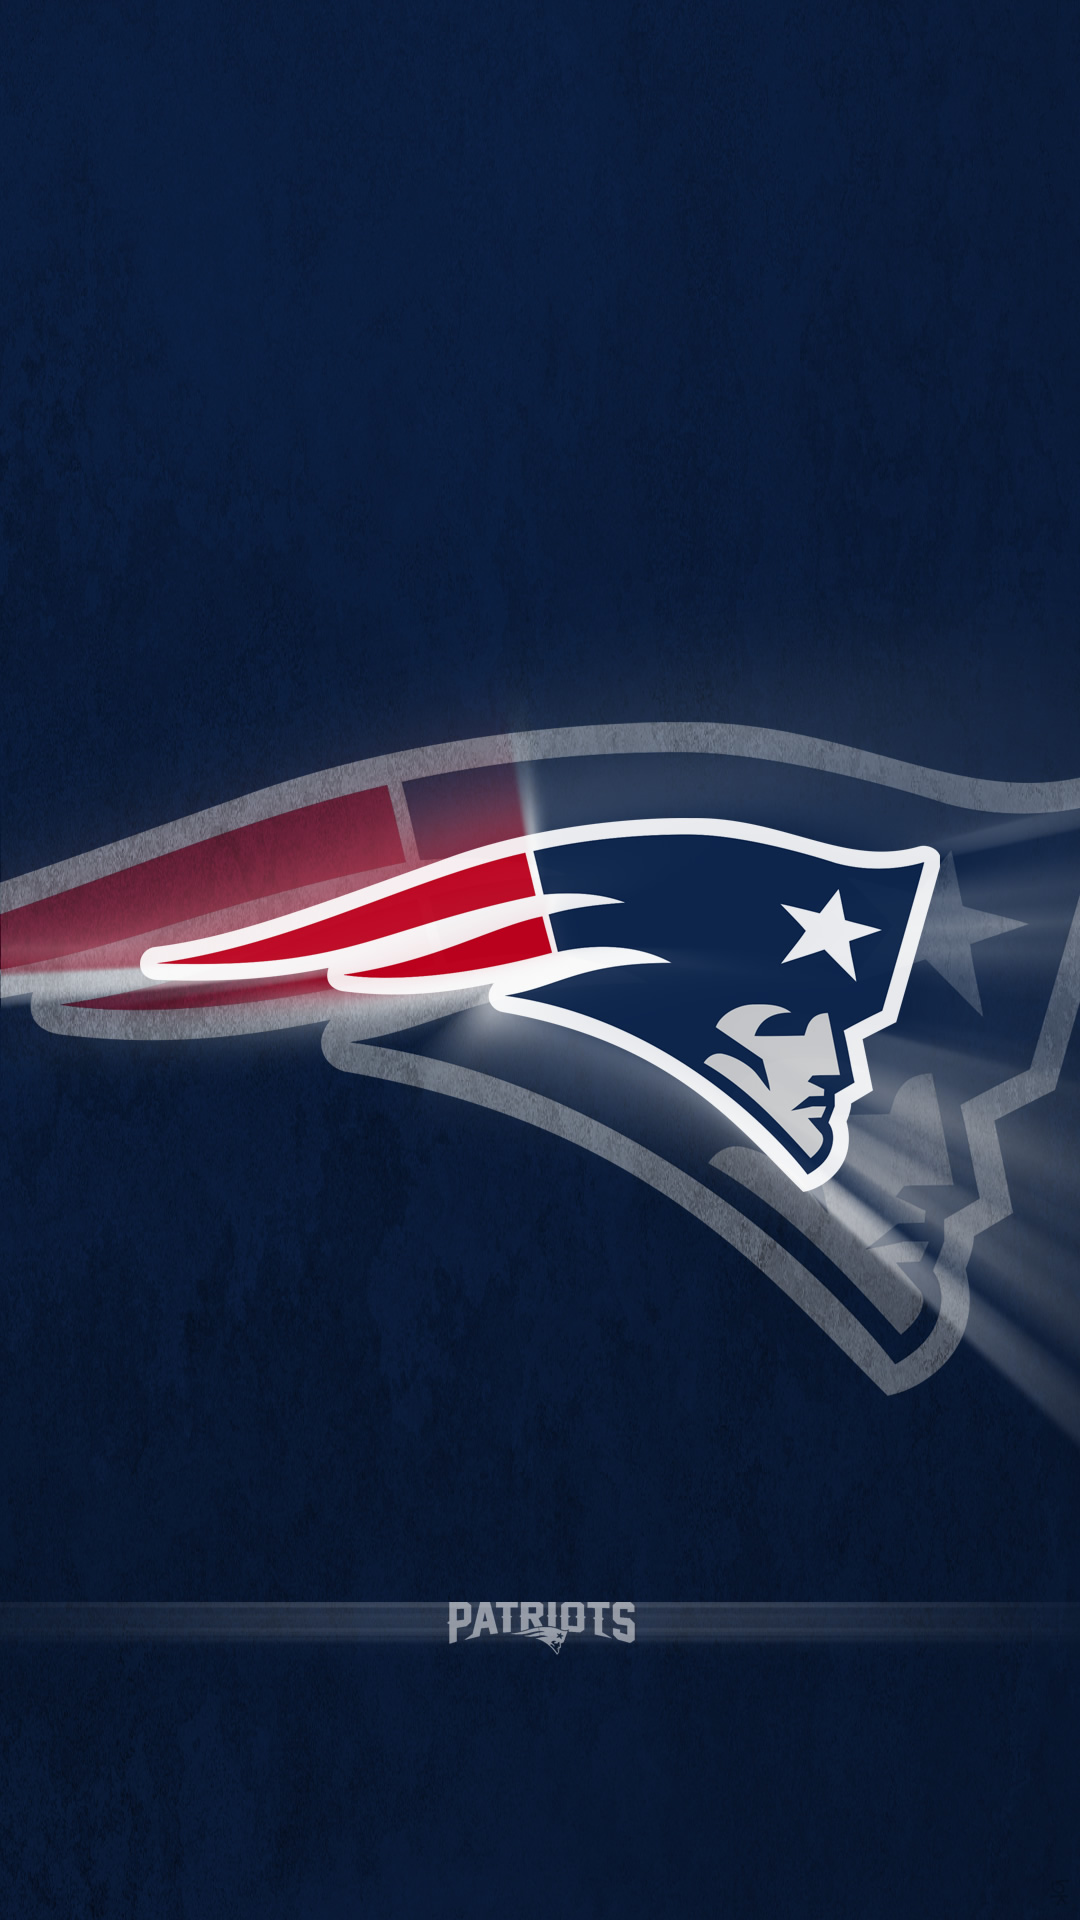 New Superbowl 2015 or Superbowl XLIX wallpaper   New England Patriots